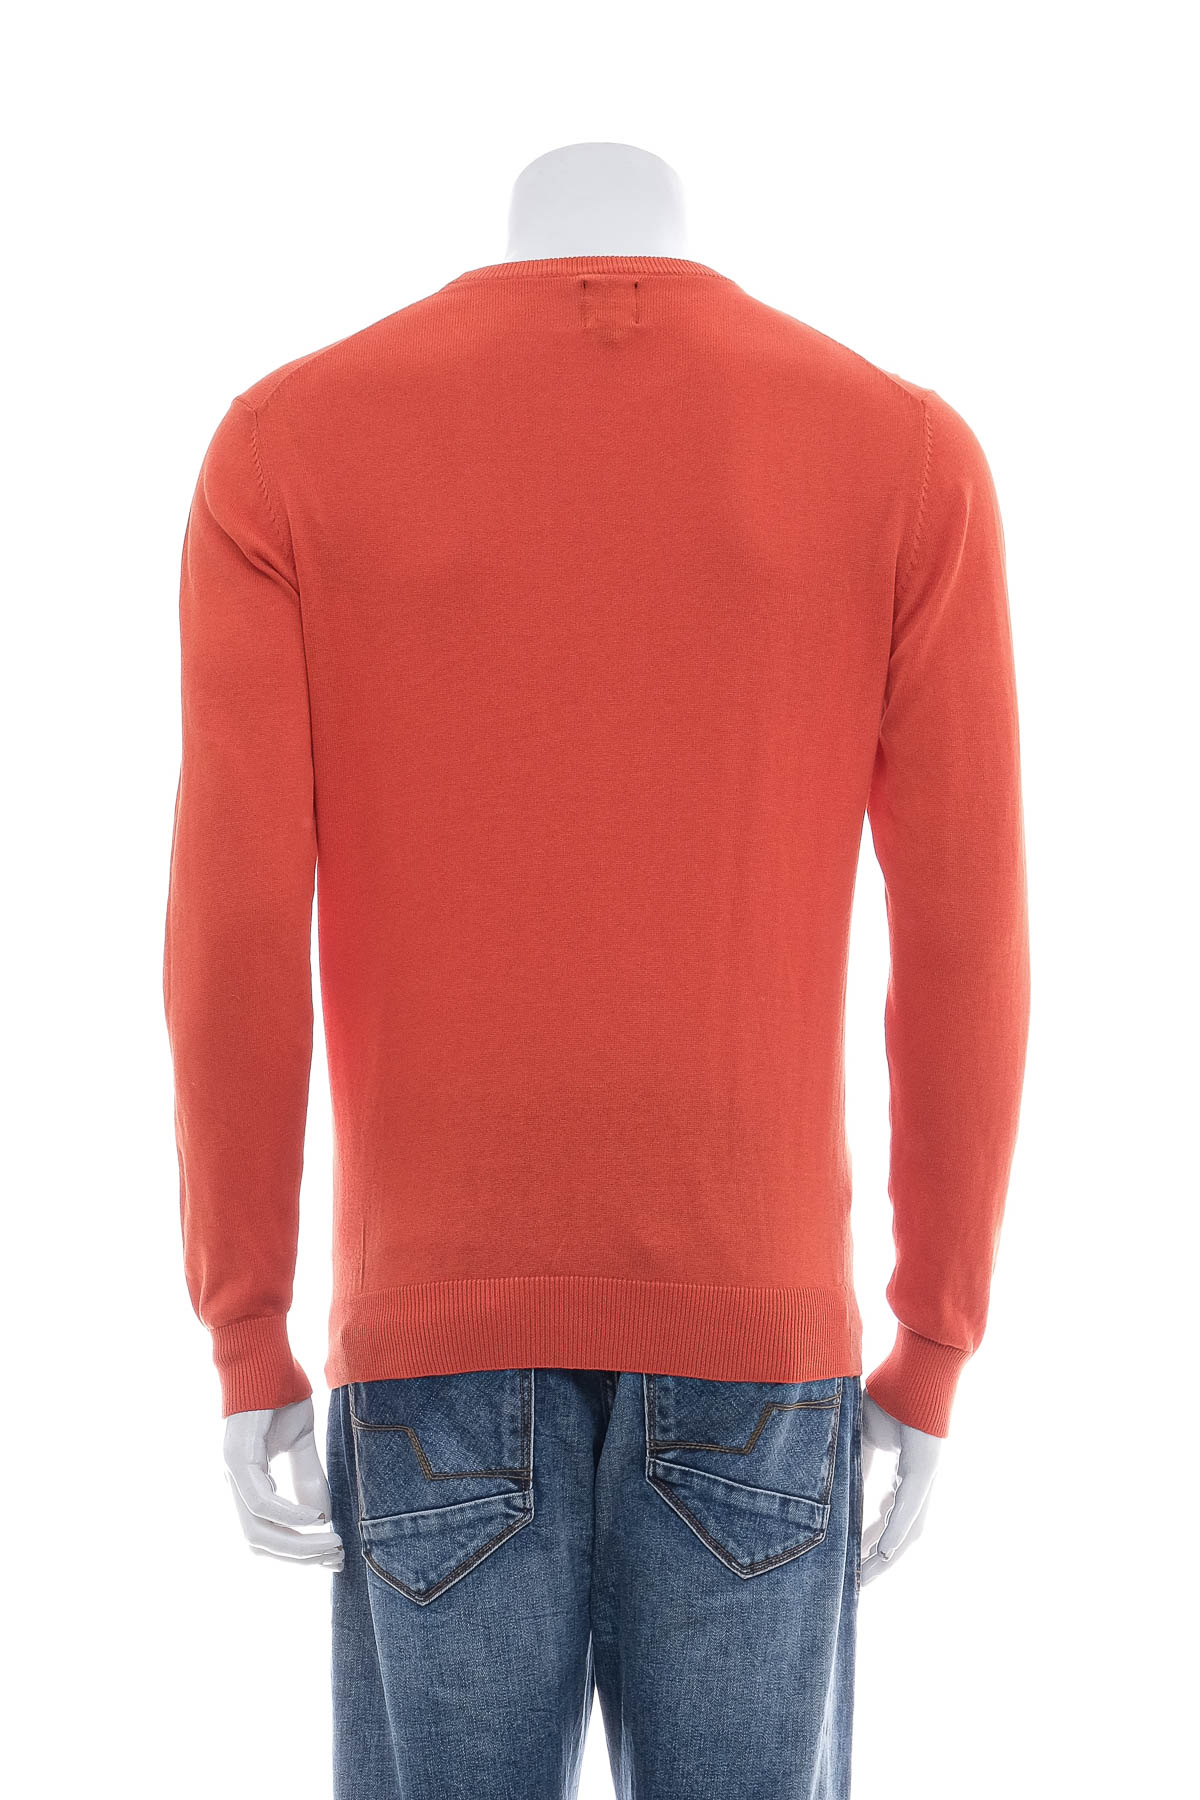 Men's sweater - DOPPELGANGER - 1